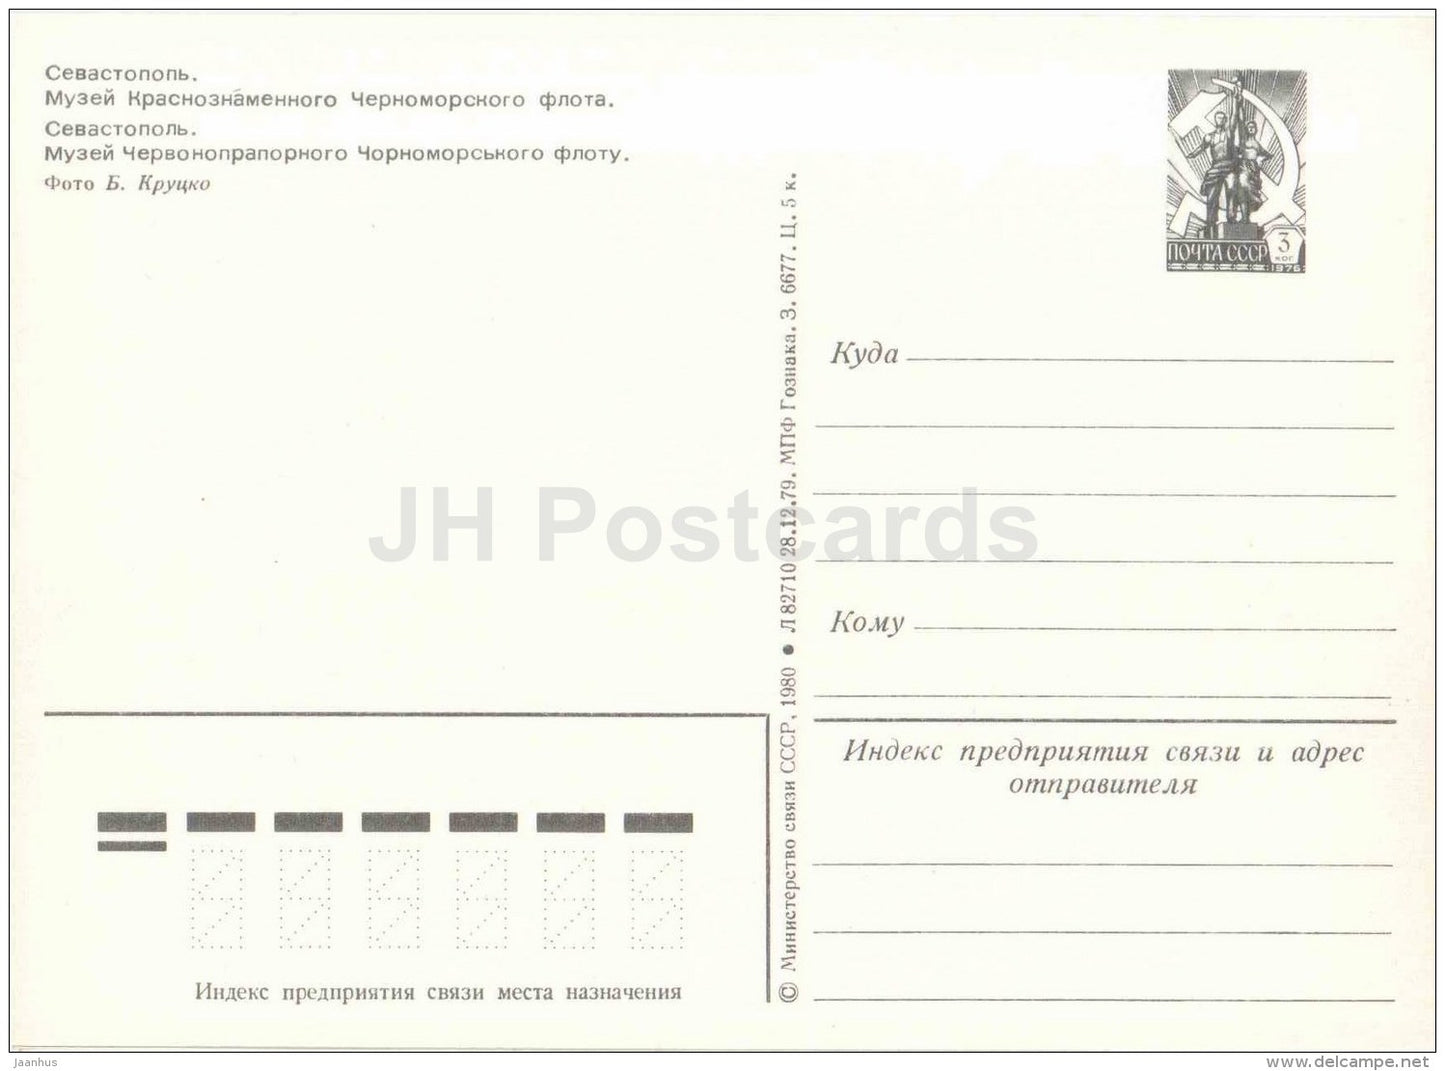 Black Sea Fleet Museum - Sevastopol - postal stationery - 1980 - Ukraine USSR - unused - JH Postcards